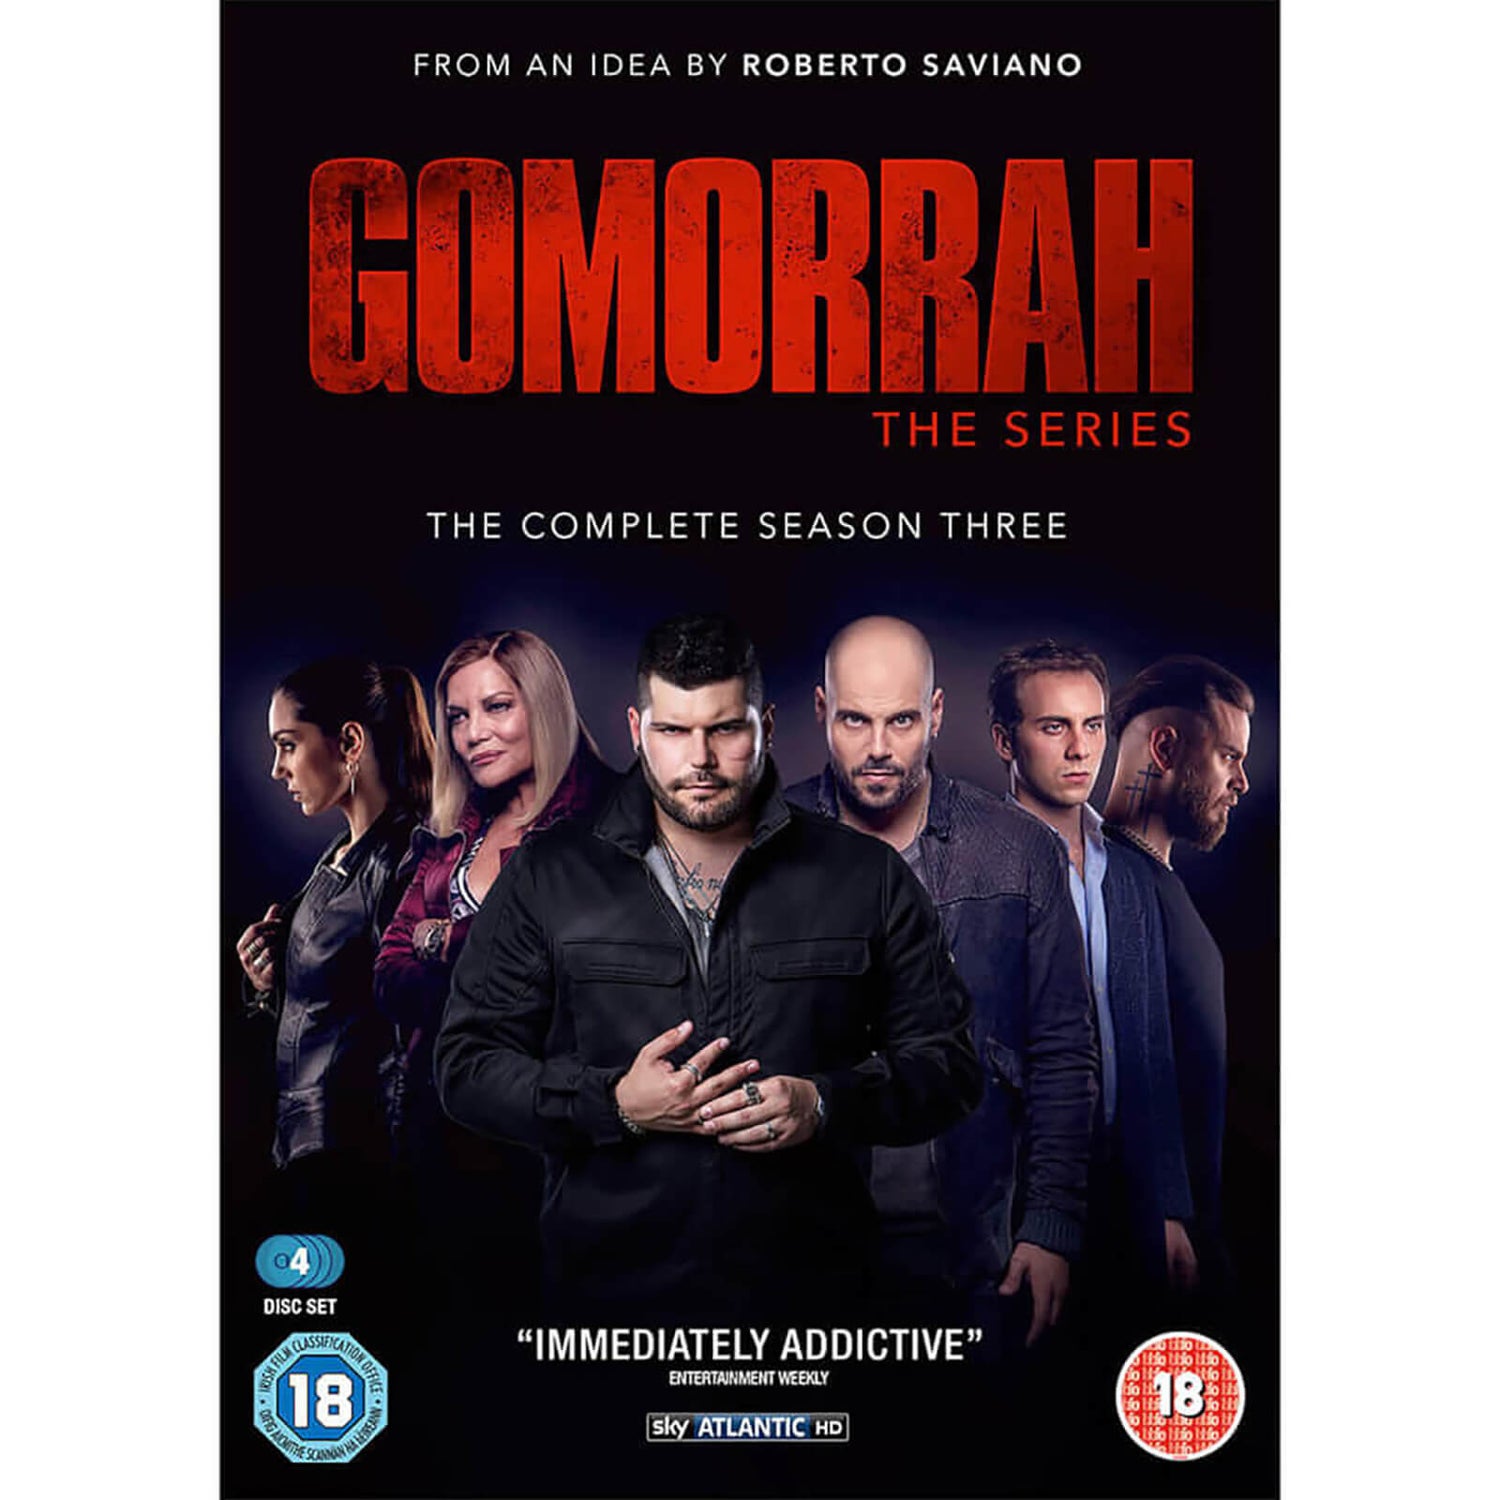 Gomorrah Season 3